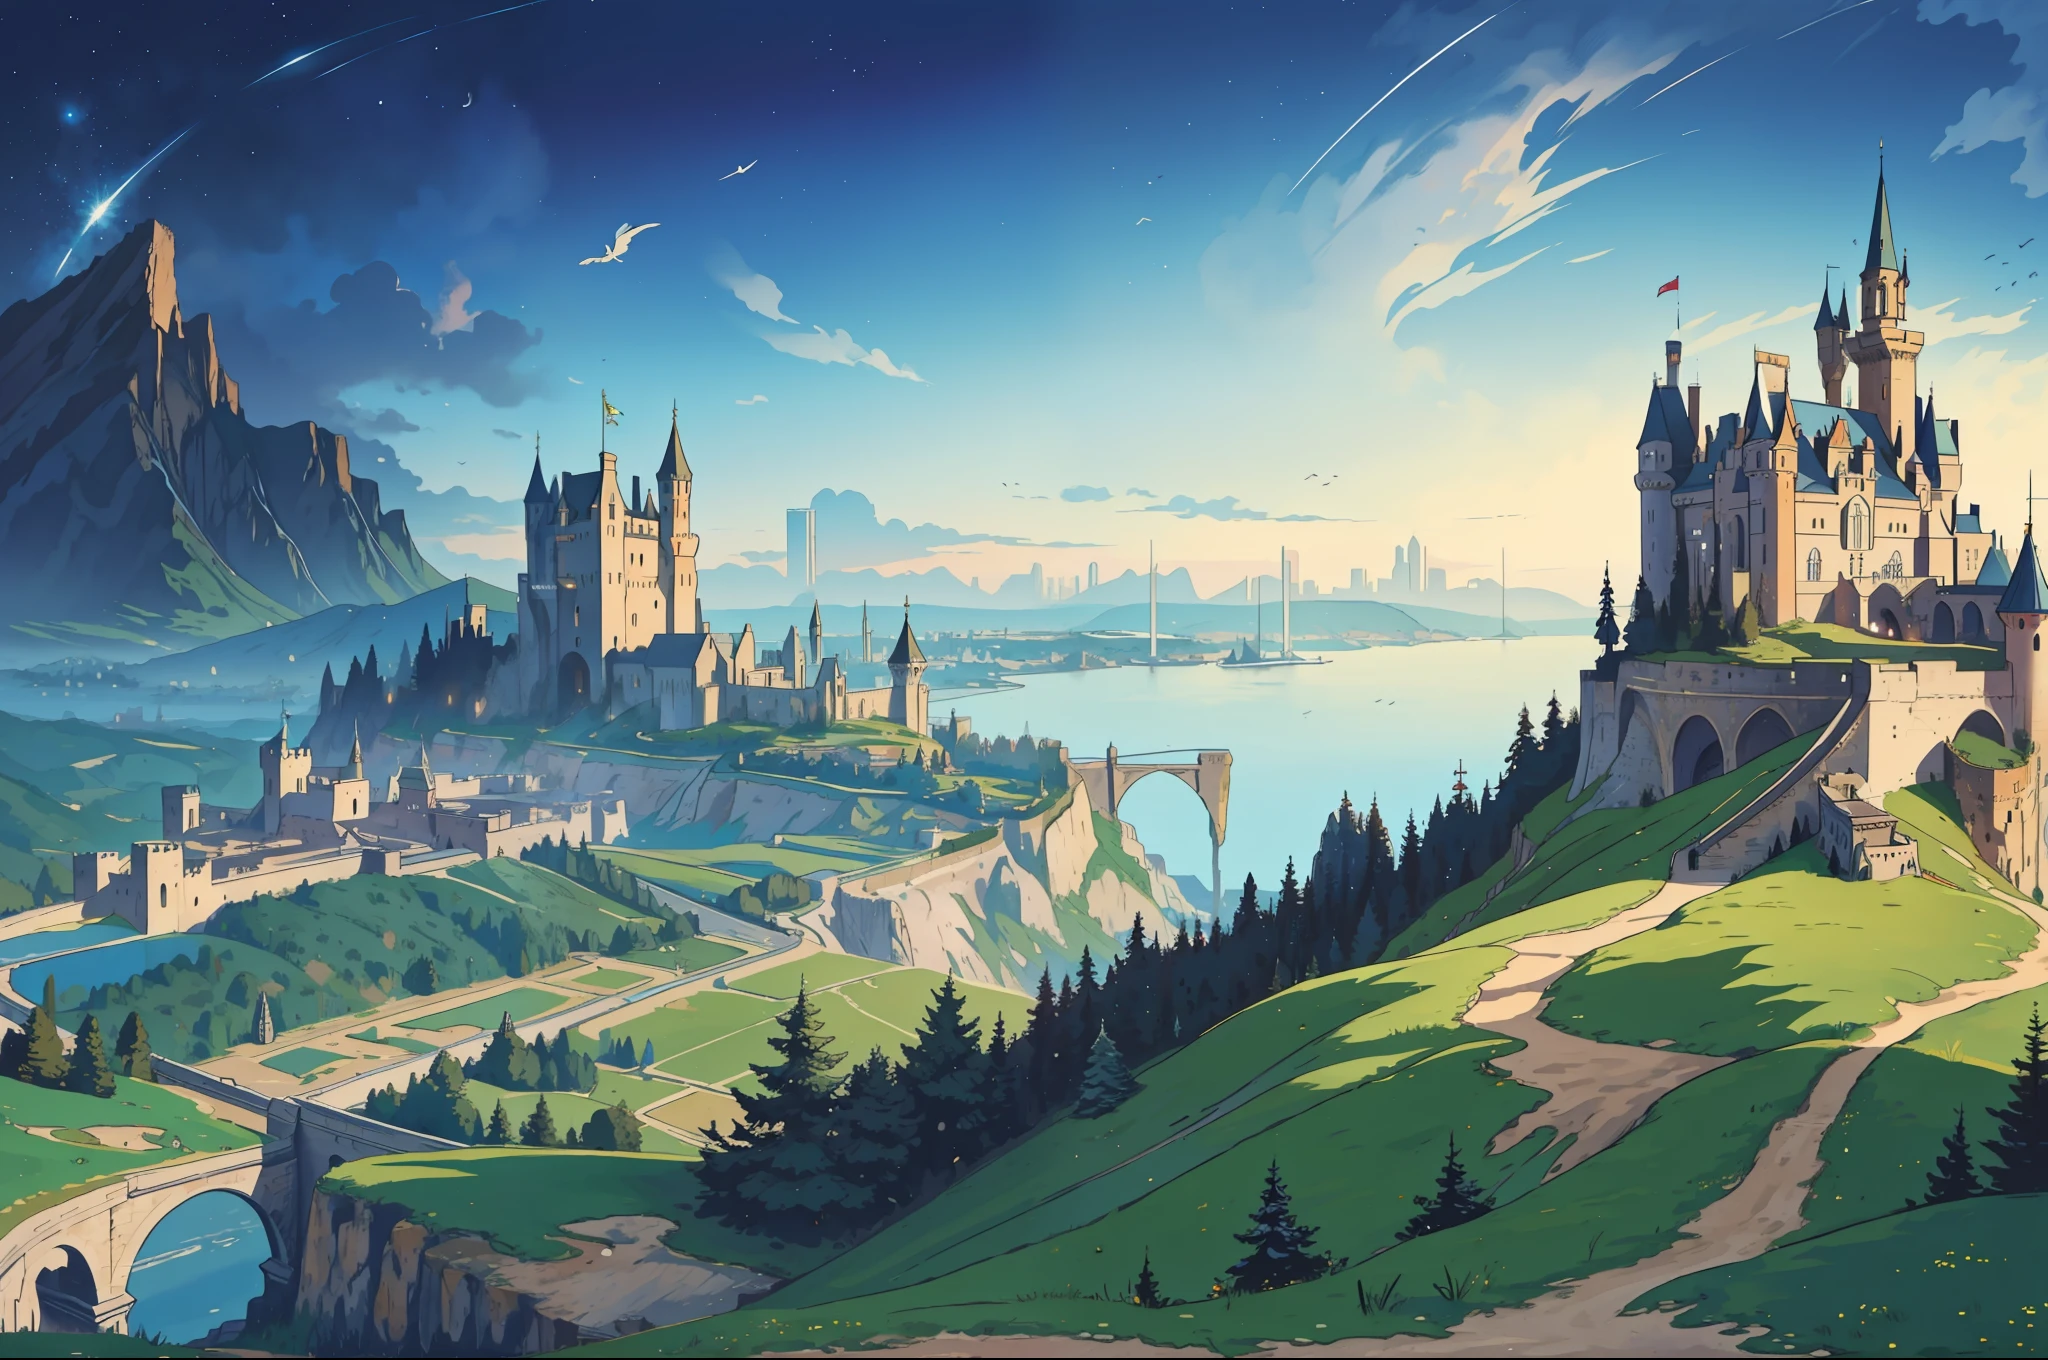 Meisterwerk, beste Qualität, Elfenmädchen auf einer Klippe, Blick auf eine Großstadt mit Burg an der Seite eines Berges, Luftaufnahme - v6